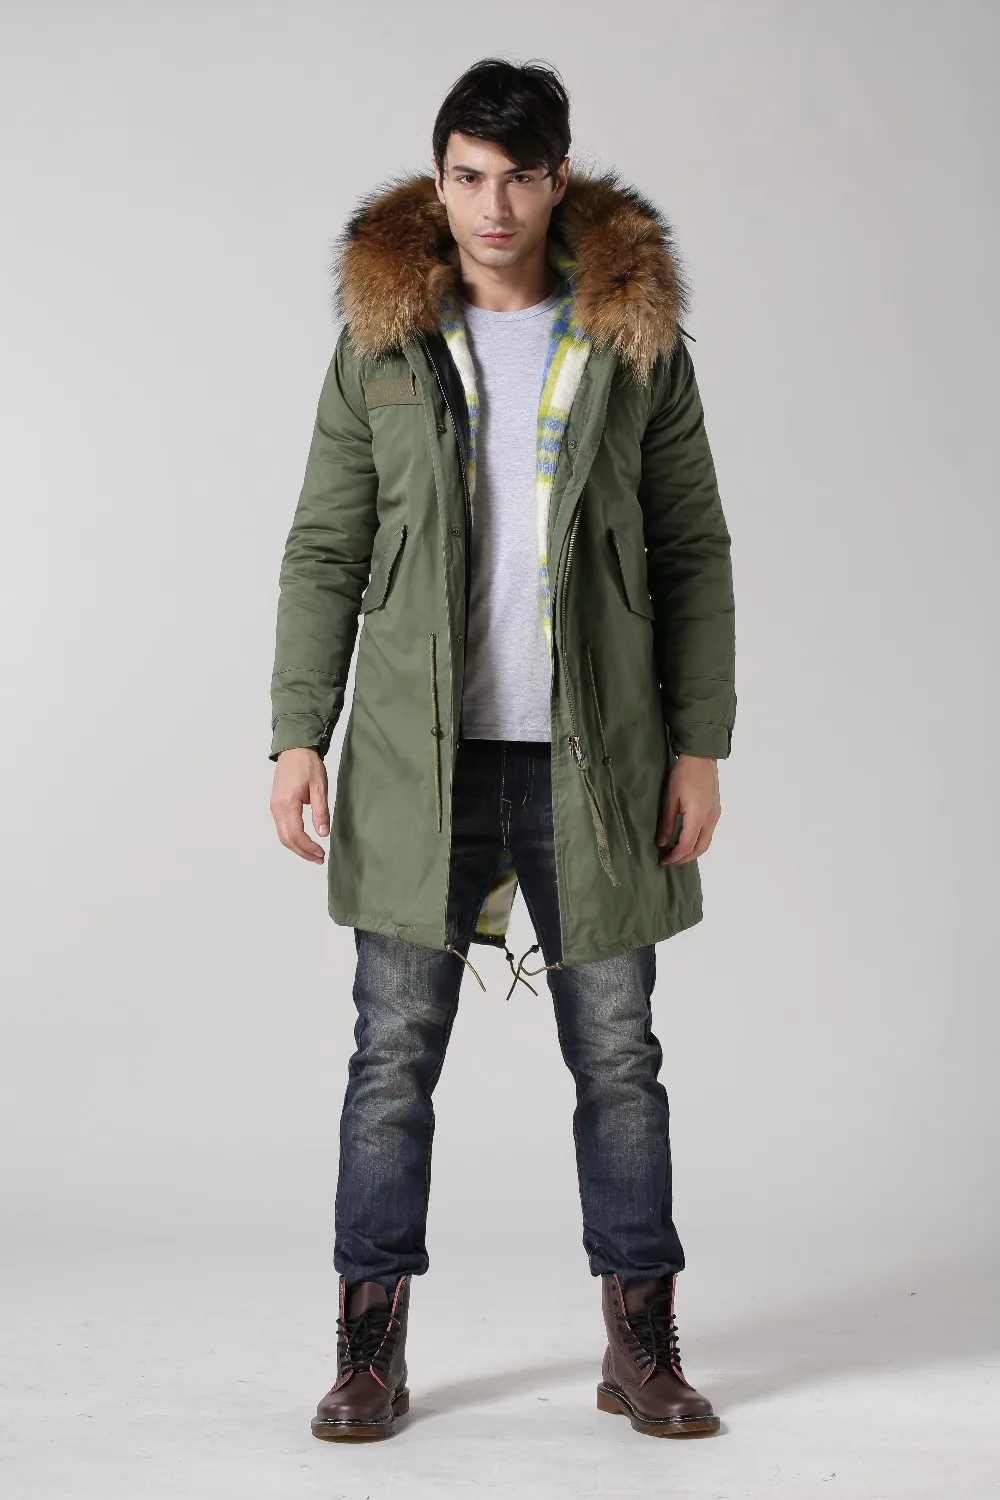 2017 meifng фабрики прямые продажи Длинные Стиль искусственного меха Модные мужские куртка и пальто, кашемир парка с мехом одежда